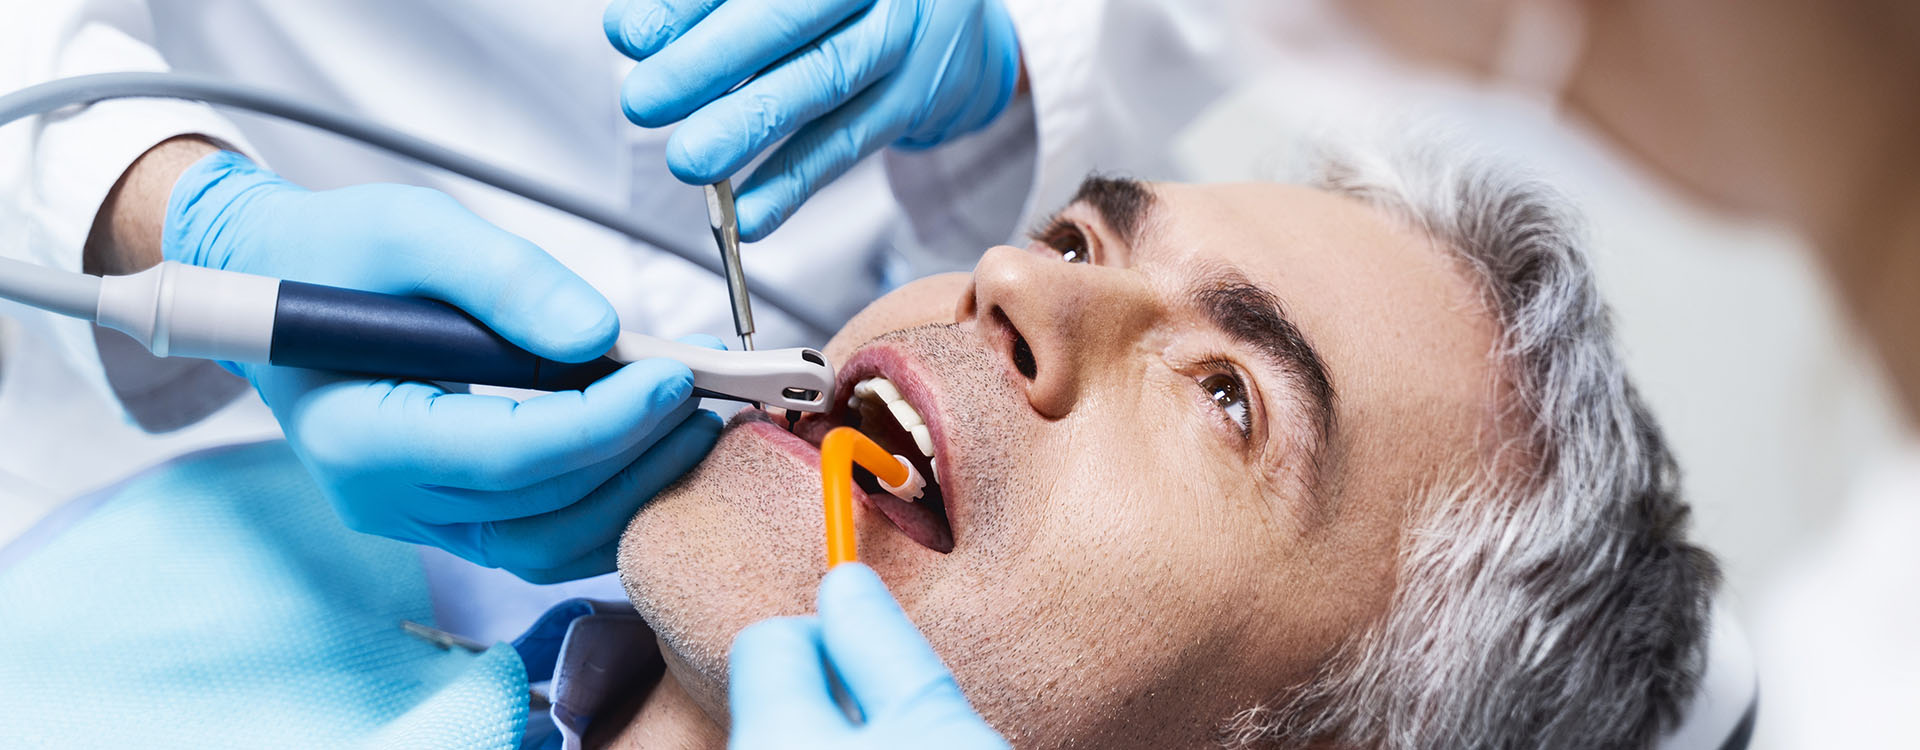 Clínica Dental Andrea Compte, tu Centro Odontológico especializado. Odontología estética en Cálig. Paciente recibiendo tratamiento dental.